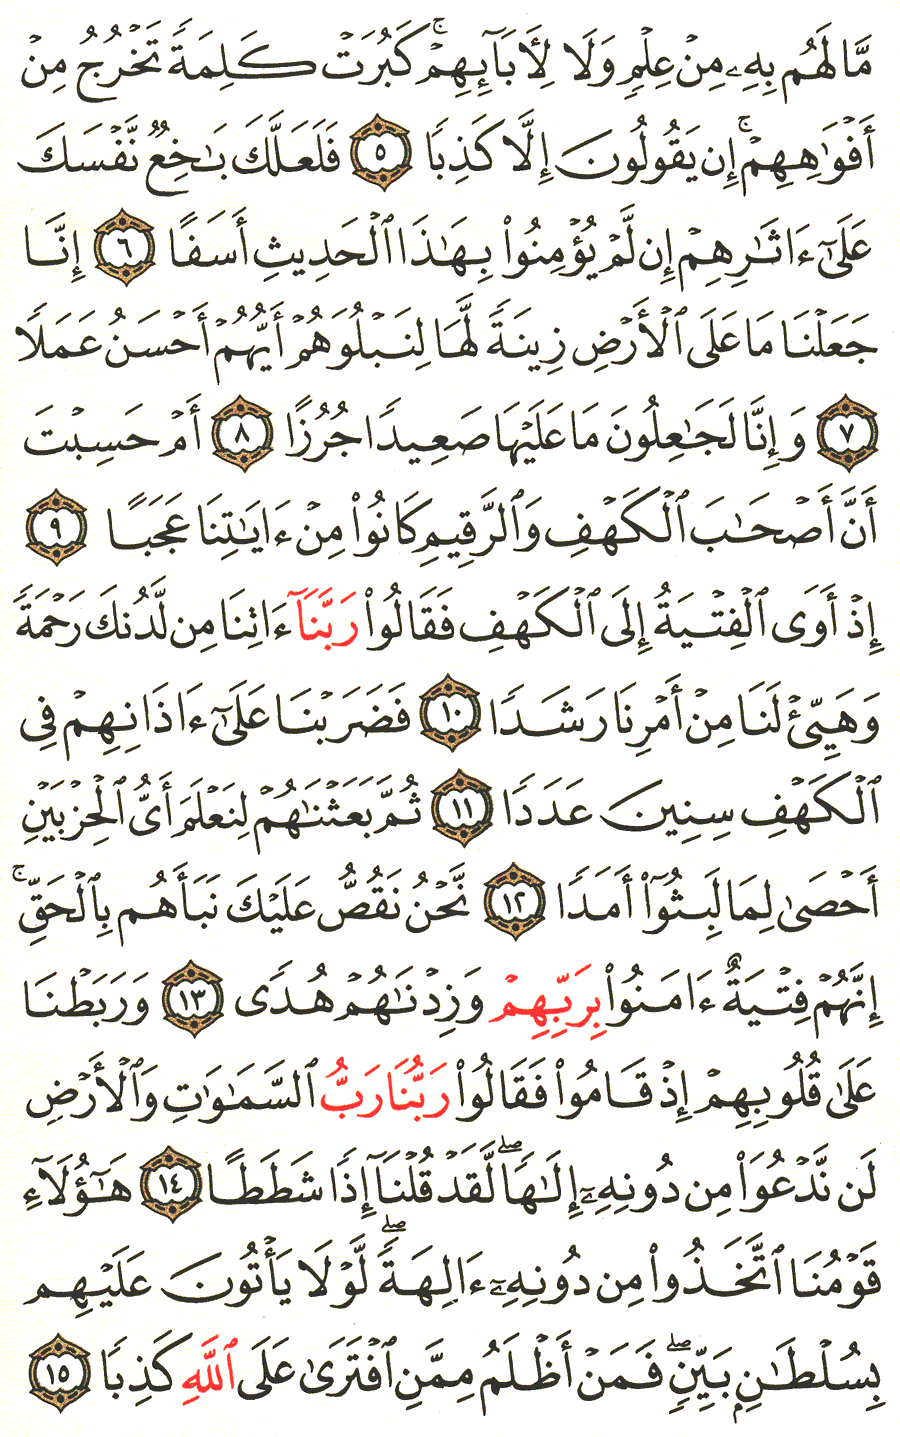 الصفحة رقم 294  من القرآن الكريم مكتوبة من المصحف